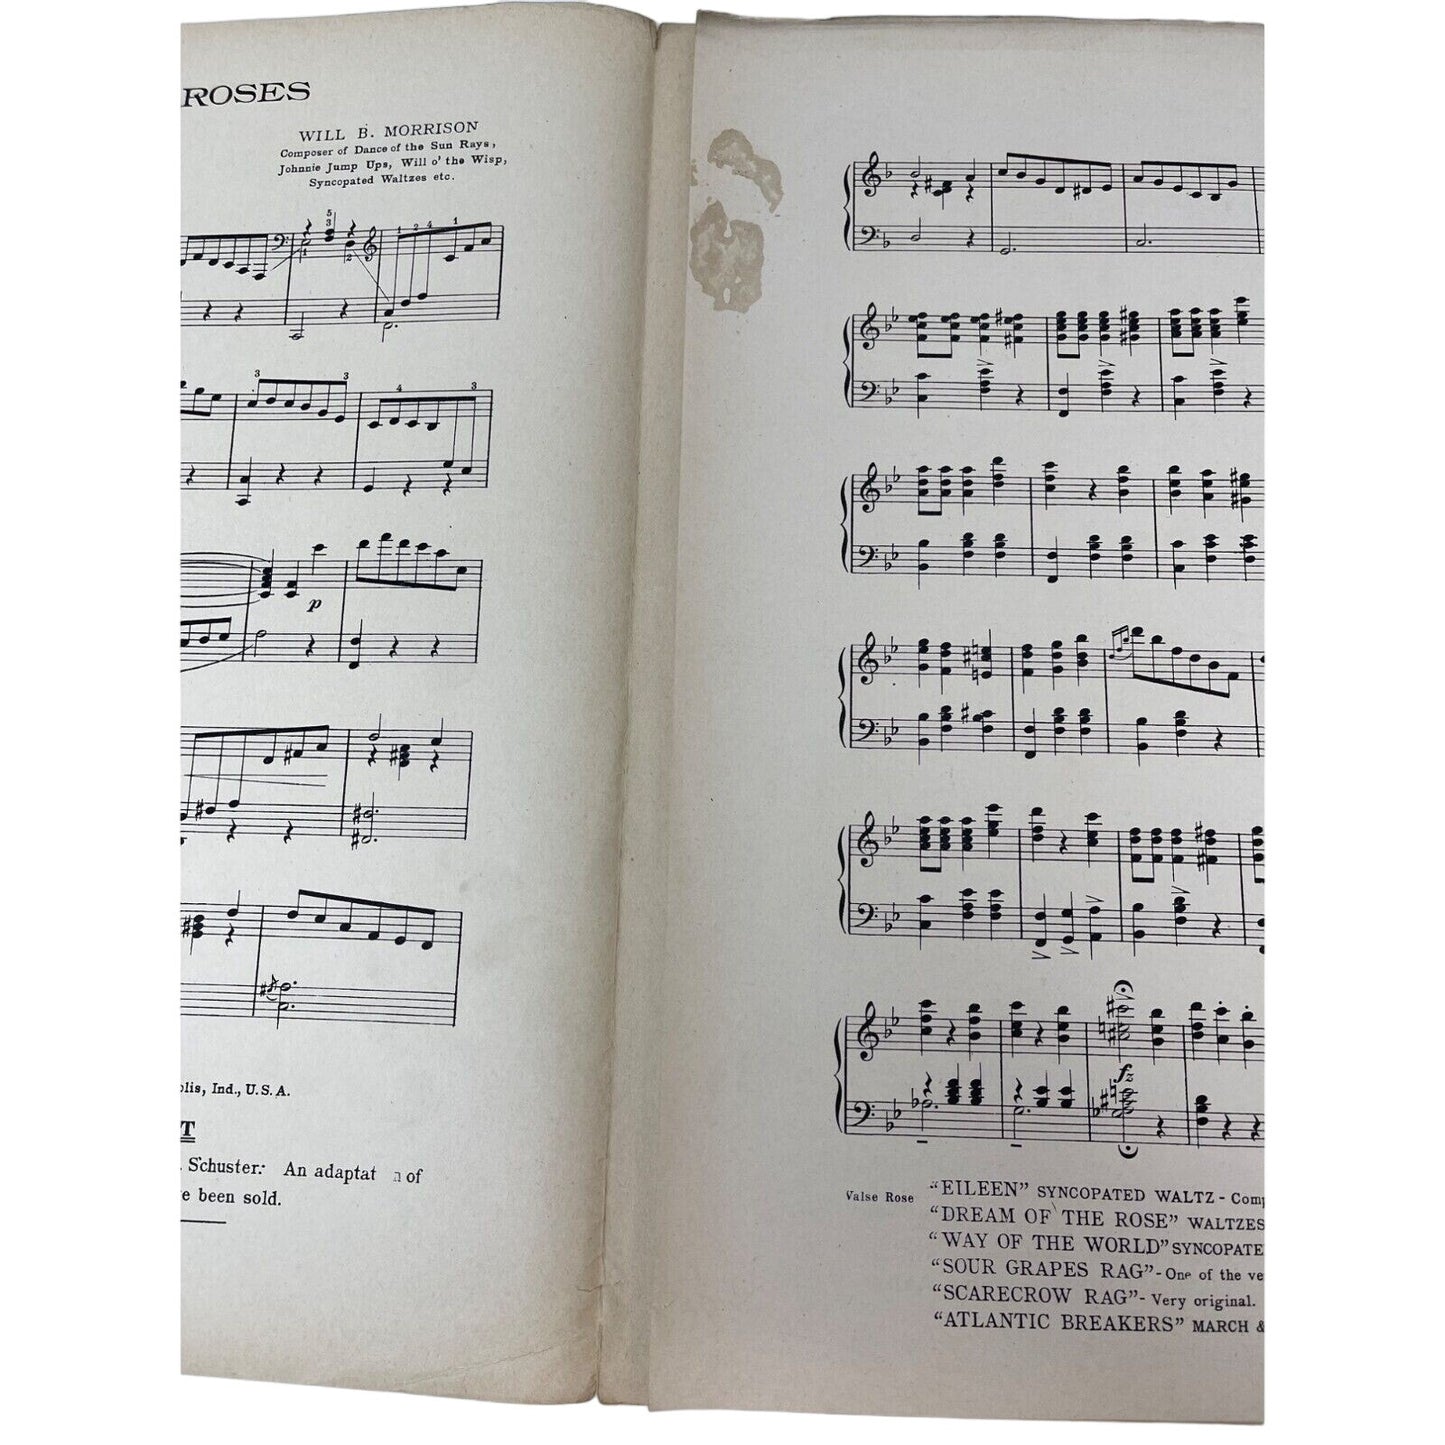 Valse Roses 1913 Sheet Music Will B Morrison